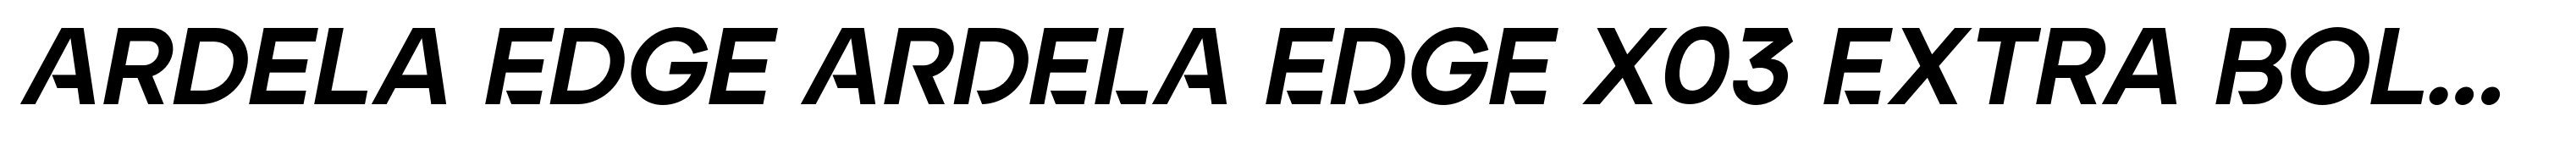 Ardela Edge ARDELA EDGE X03 Extra Bold Italic